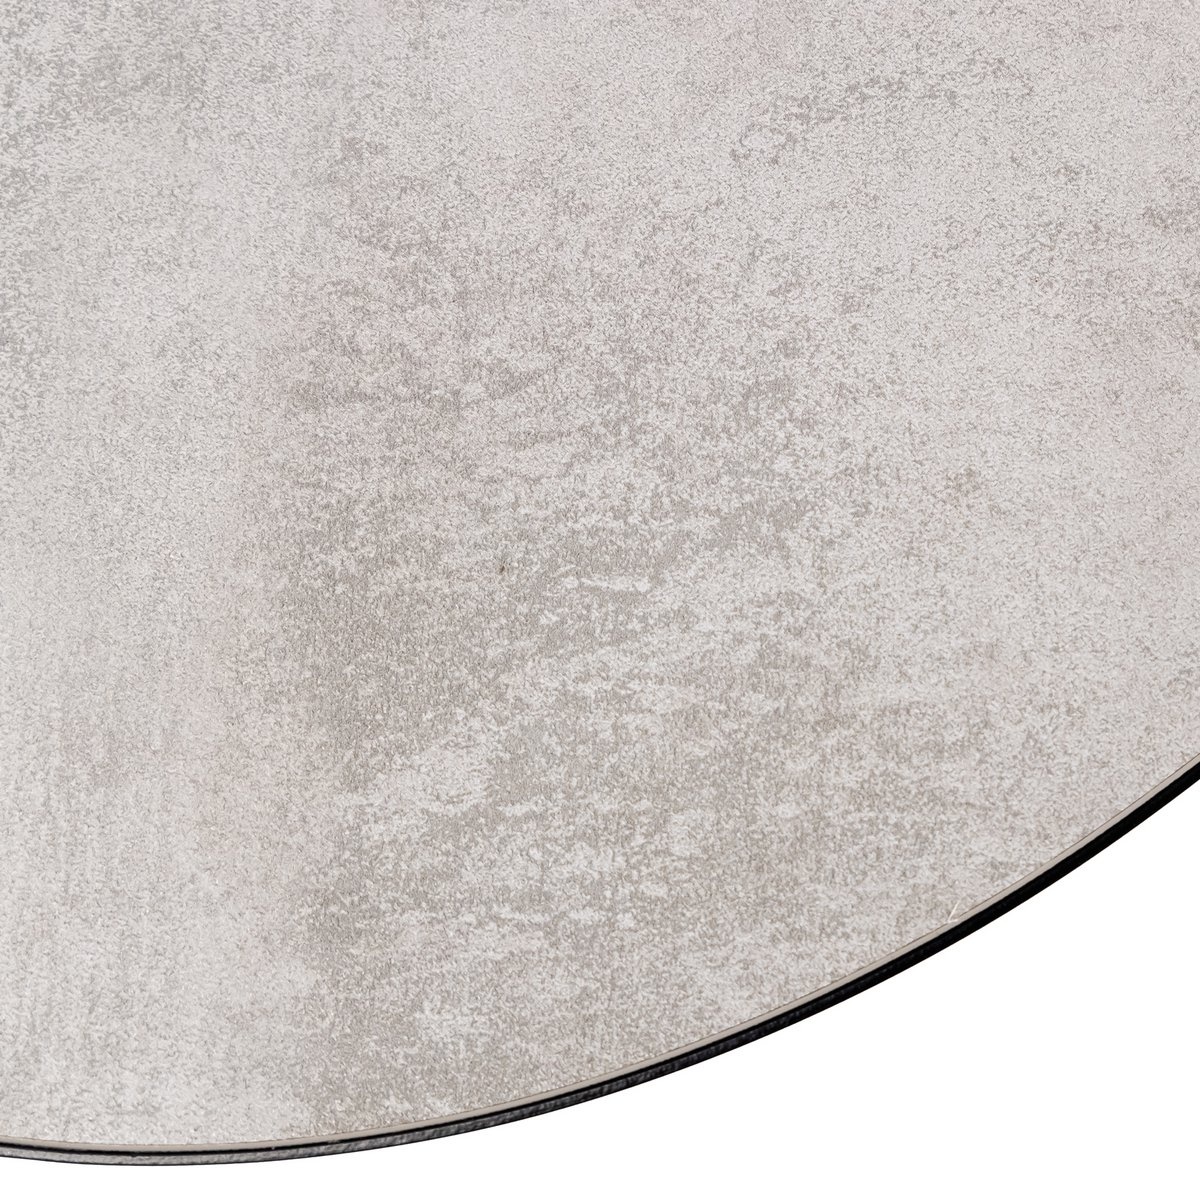 KantoormeubelenPlus Stalux Ovale eettafel 'Mees' 240 x 110cm, kleur zwart / beton